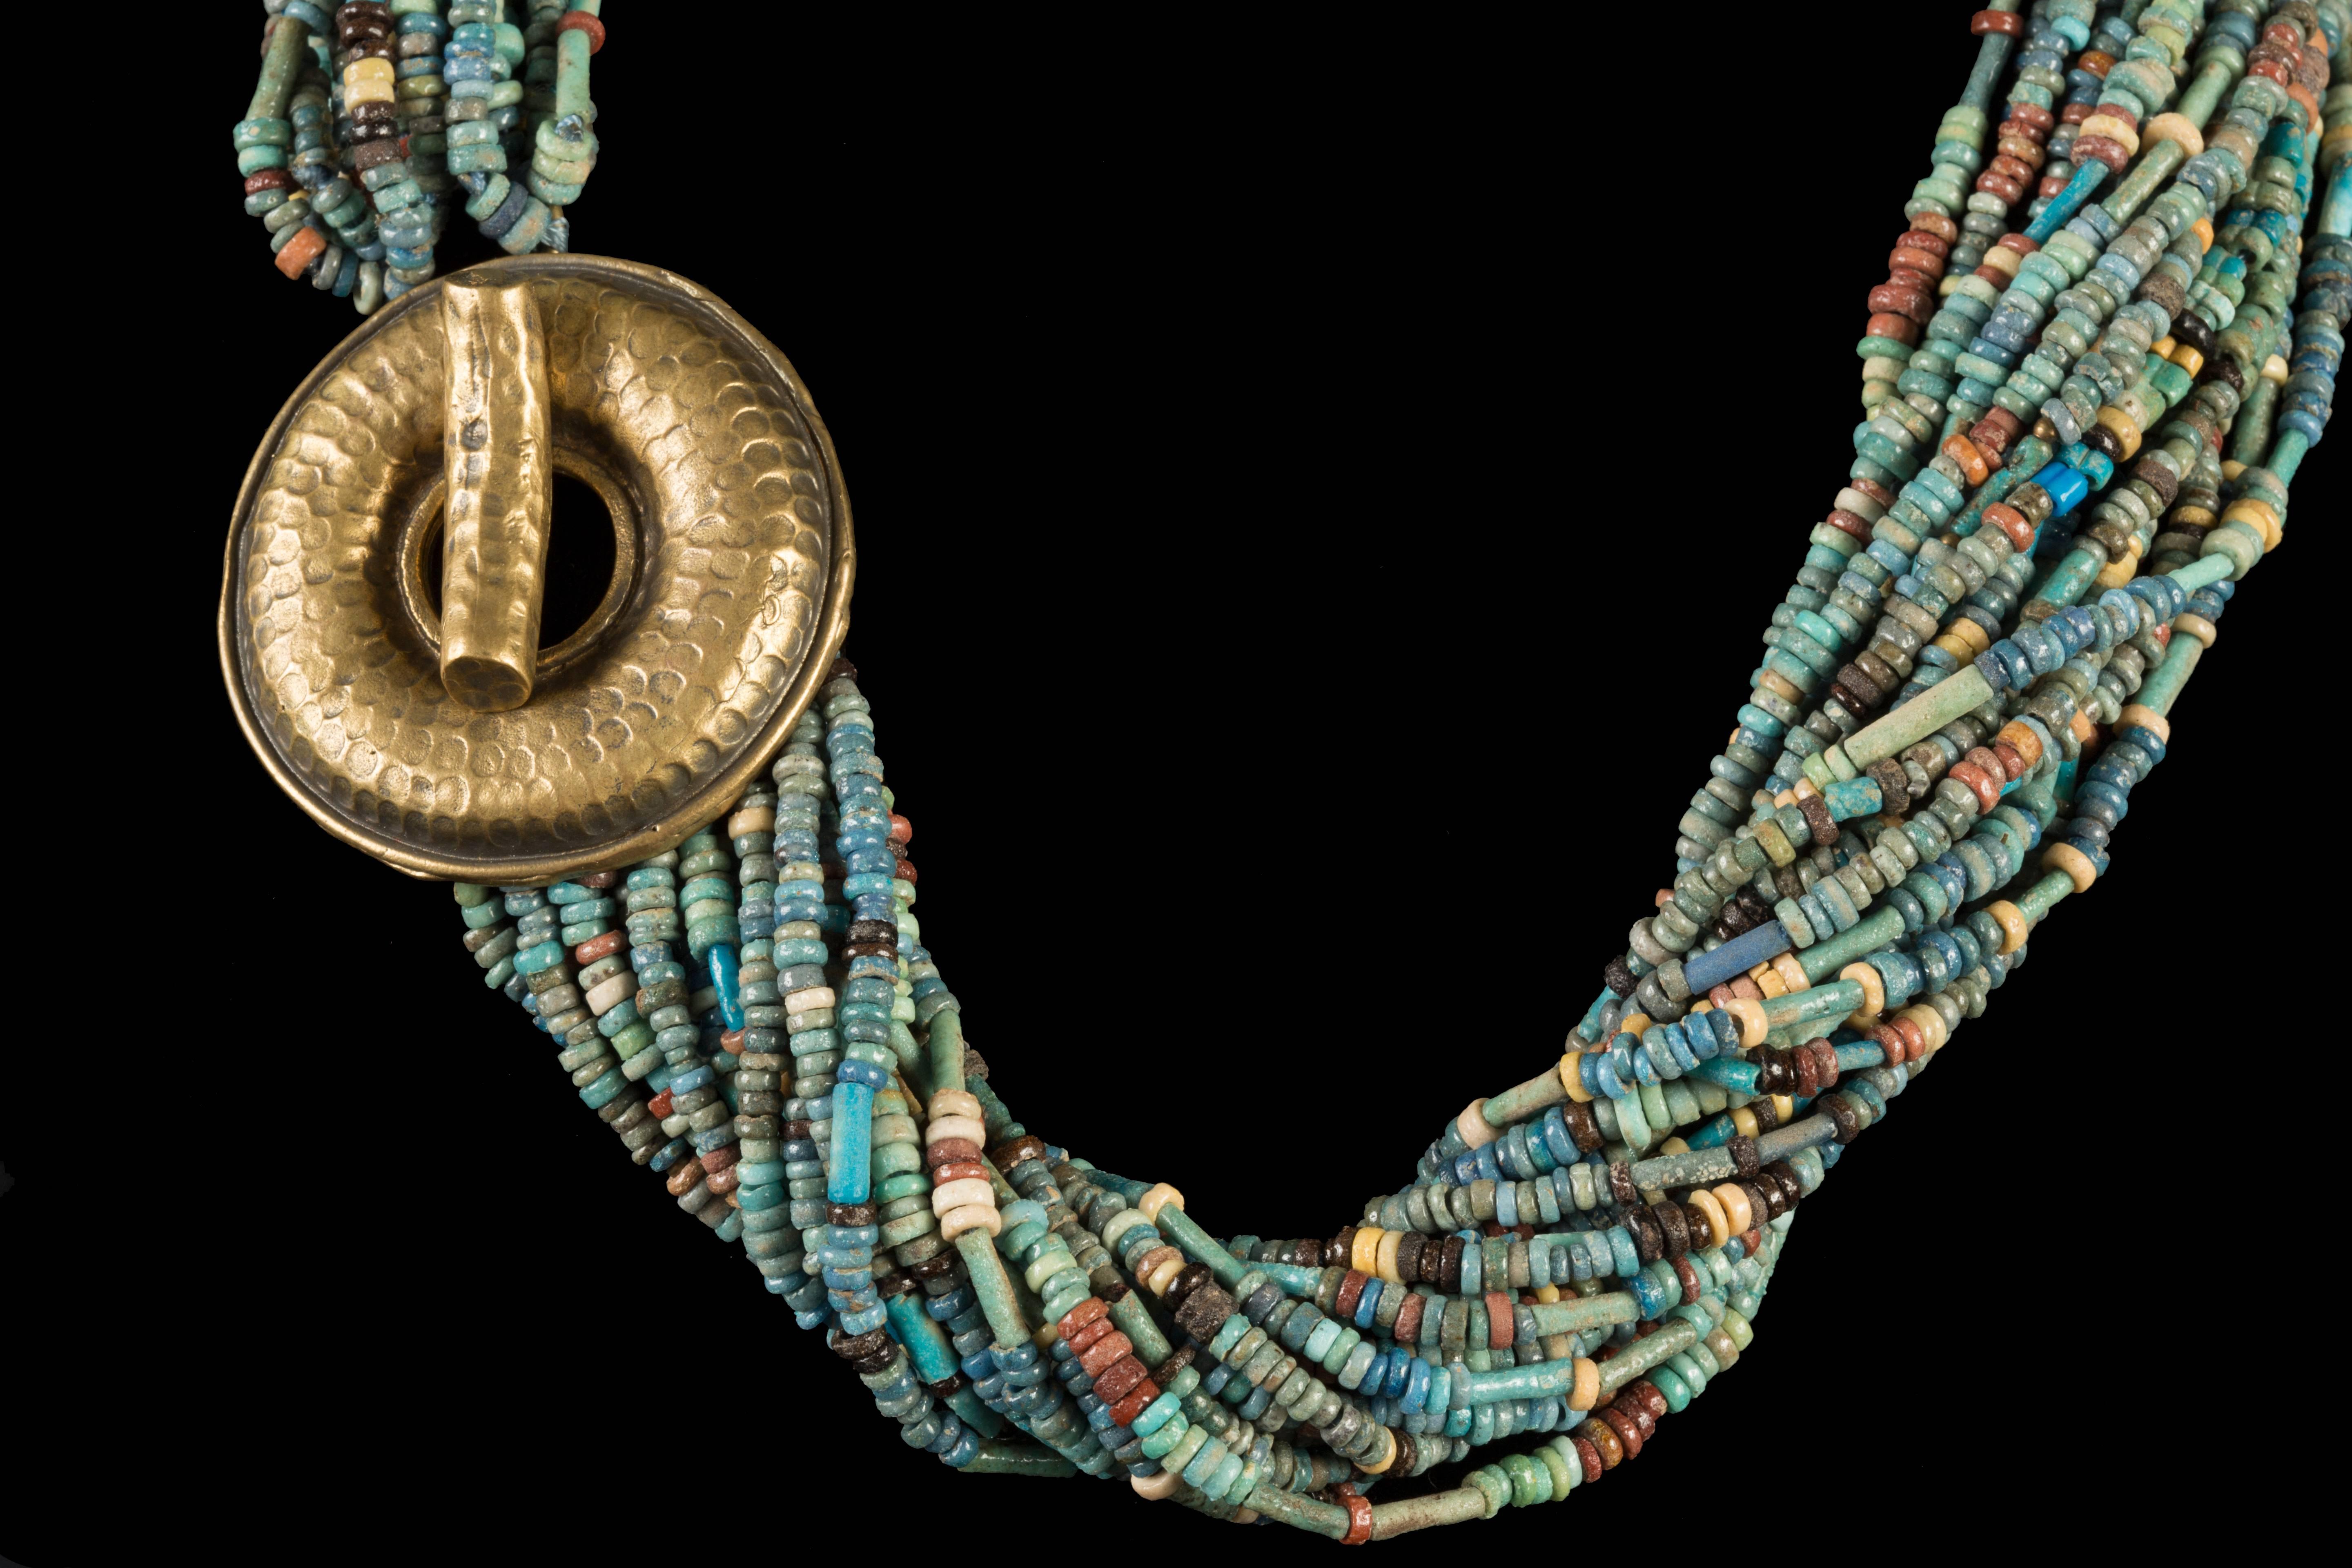 Collier de 20 perles de faïence multicolore de l'Égypte ancienne (2 500 ans) avec des attaches modernes en bronze. 